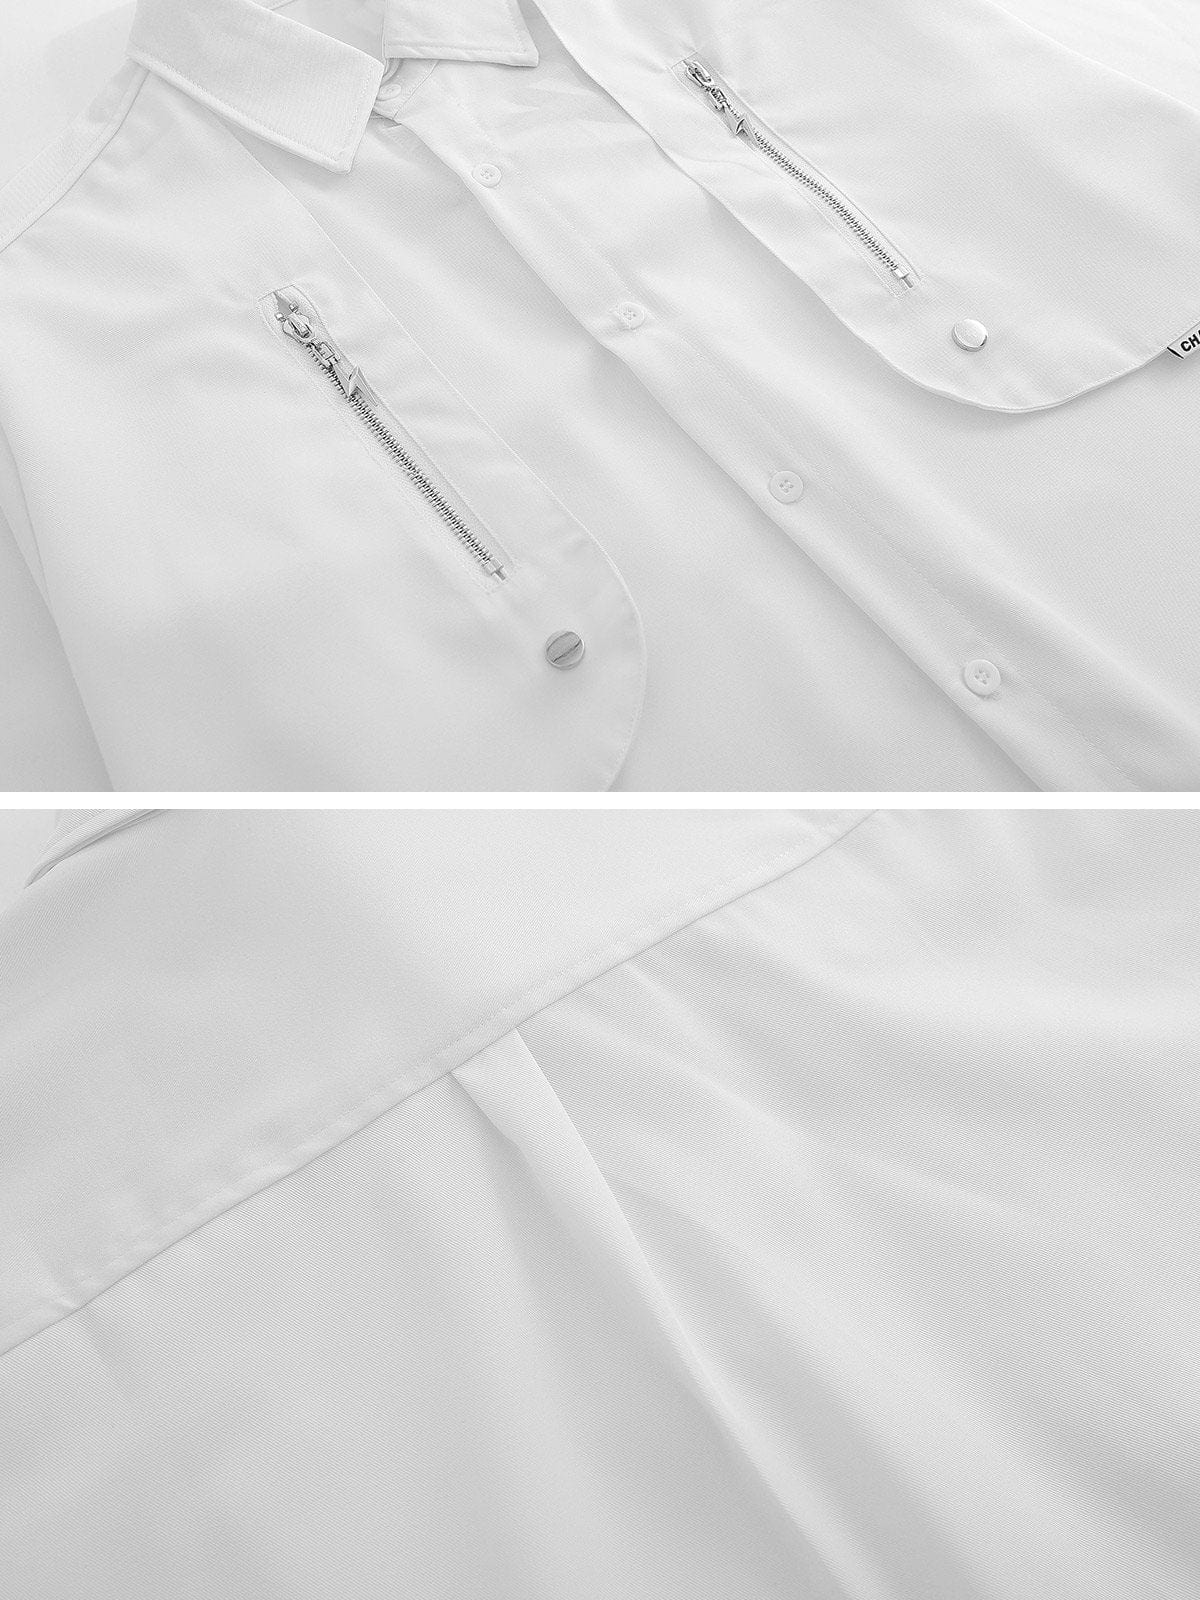 NEV Deconstruct Long Sleeve Shirt